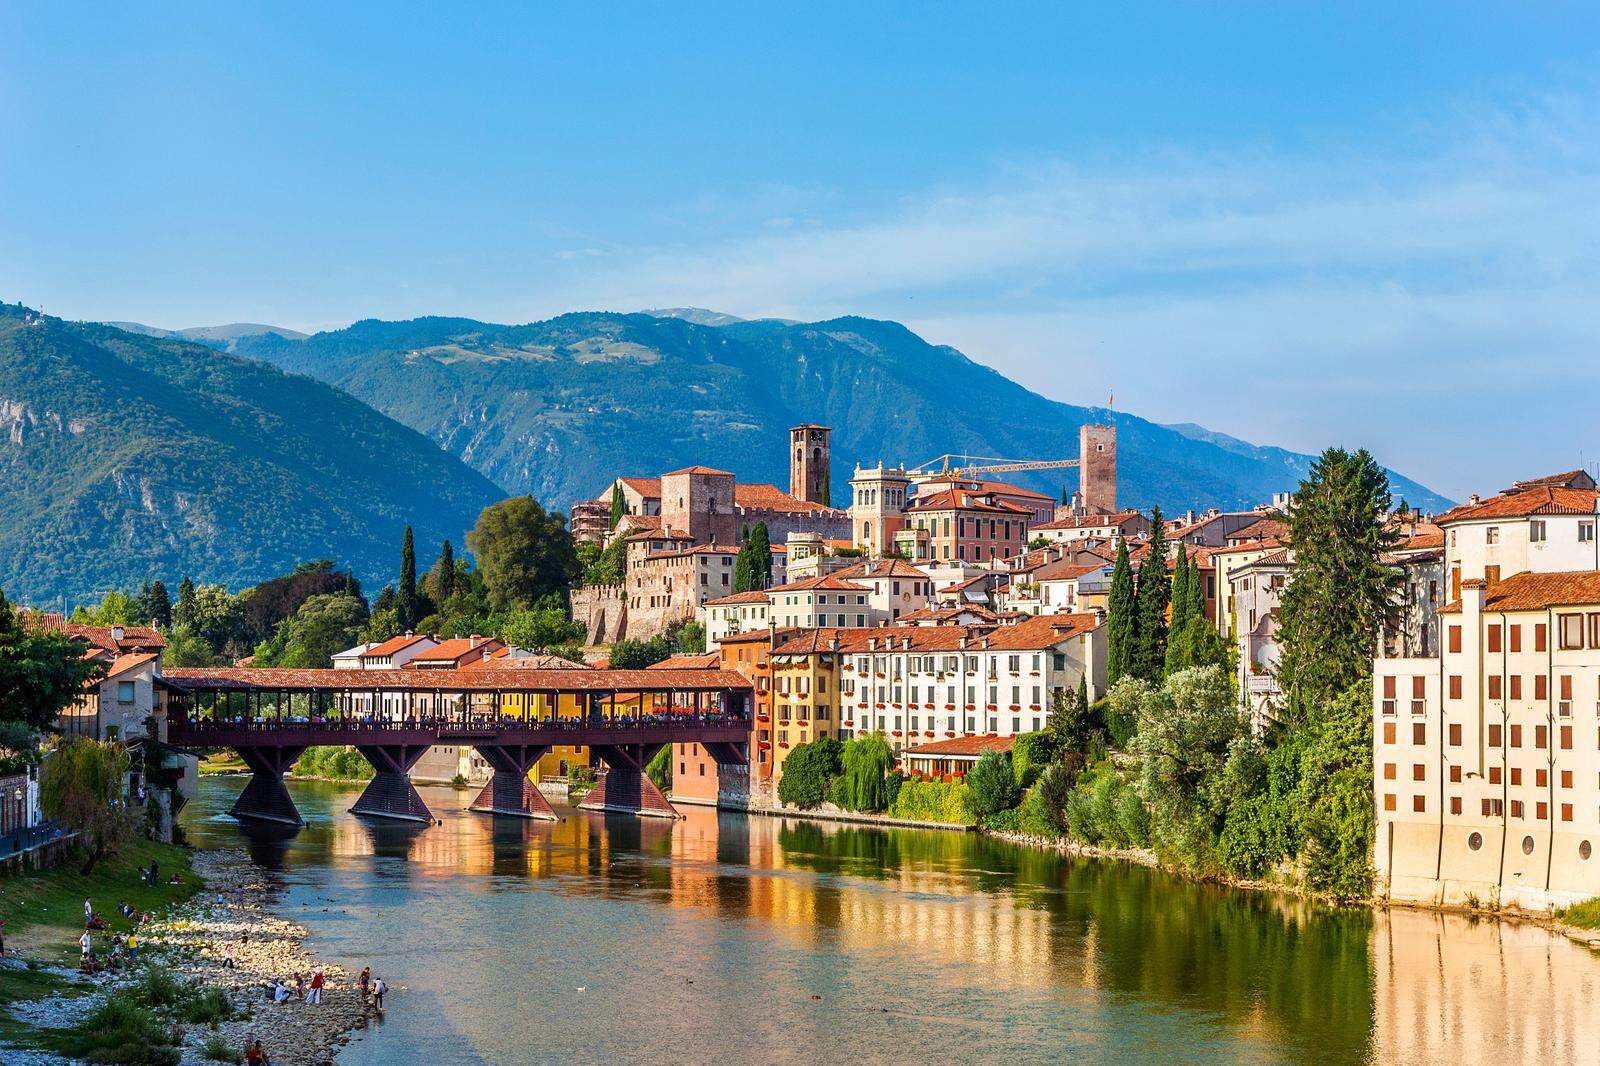 Postkartenmotiv: Der Ponte degli Alpini über die Brenta mit dem Namensgeber der Stadt, dem Monte Grappa